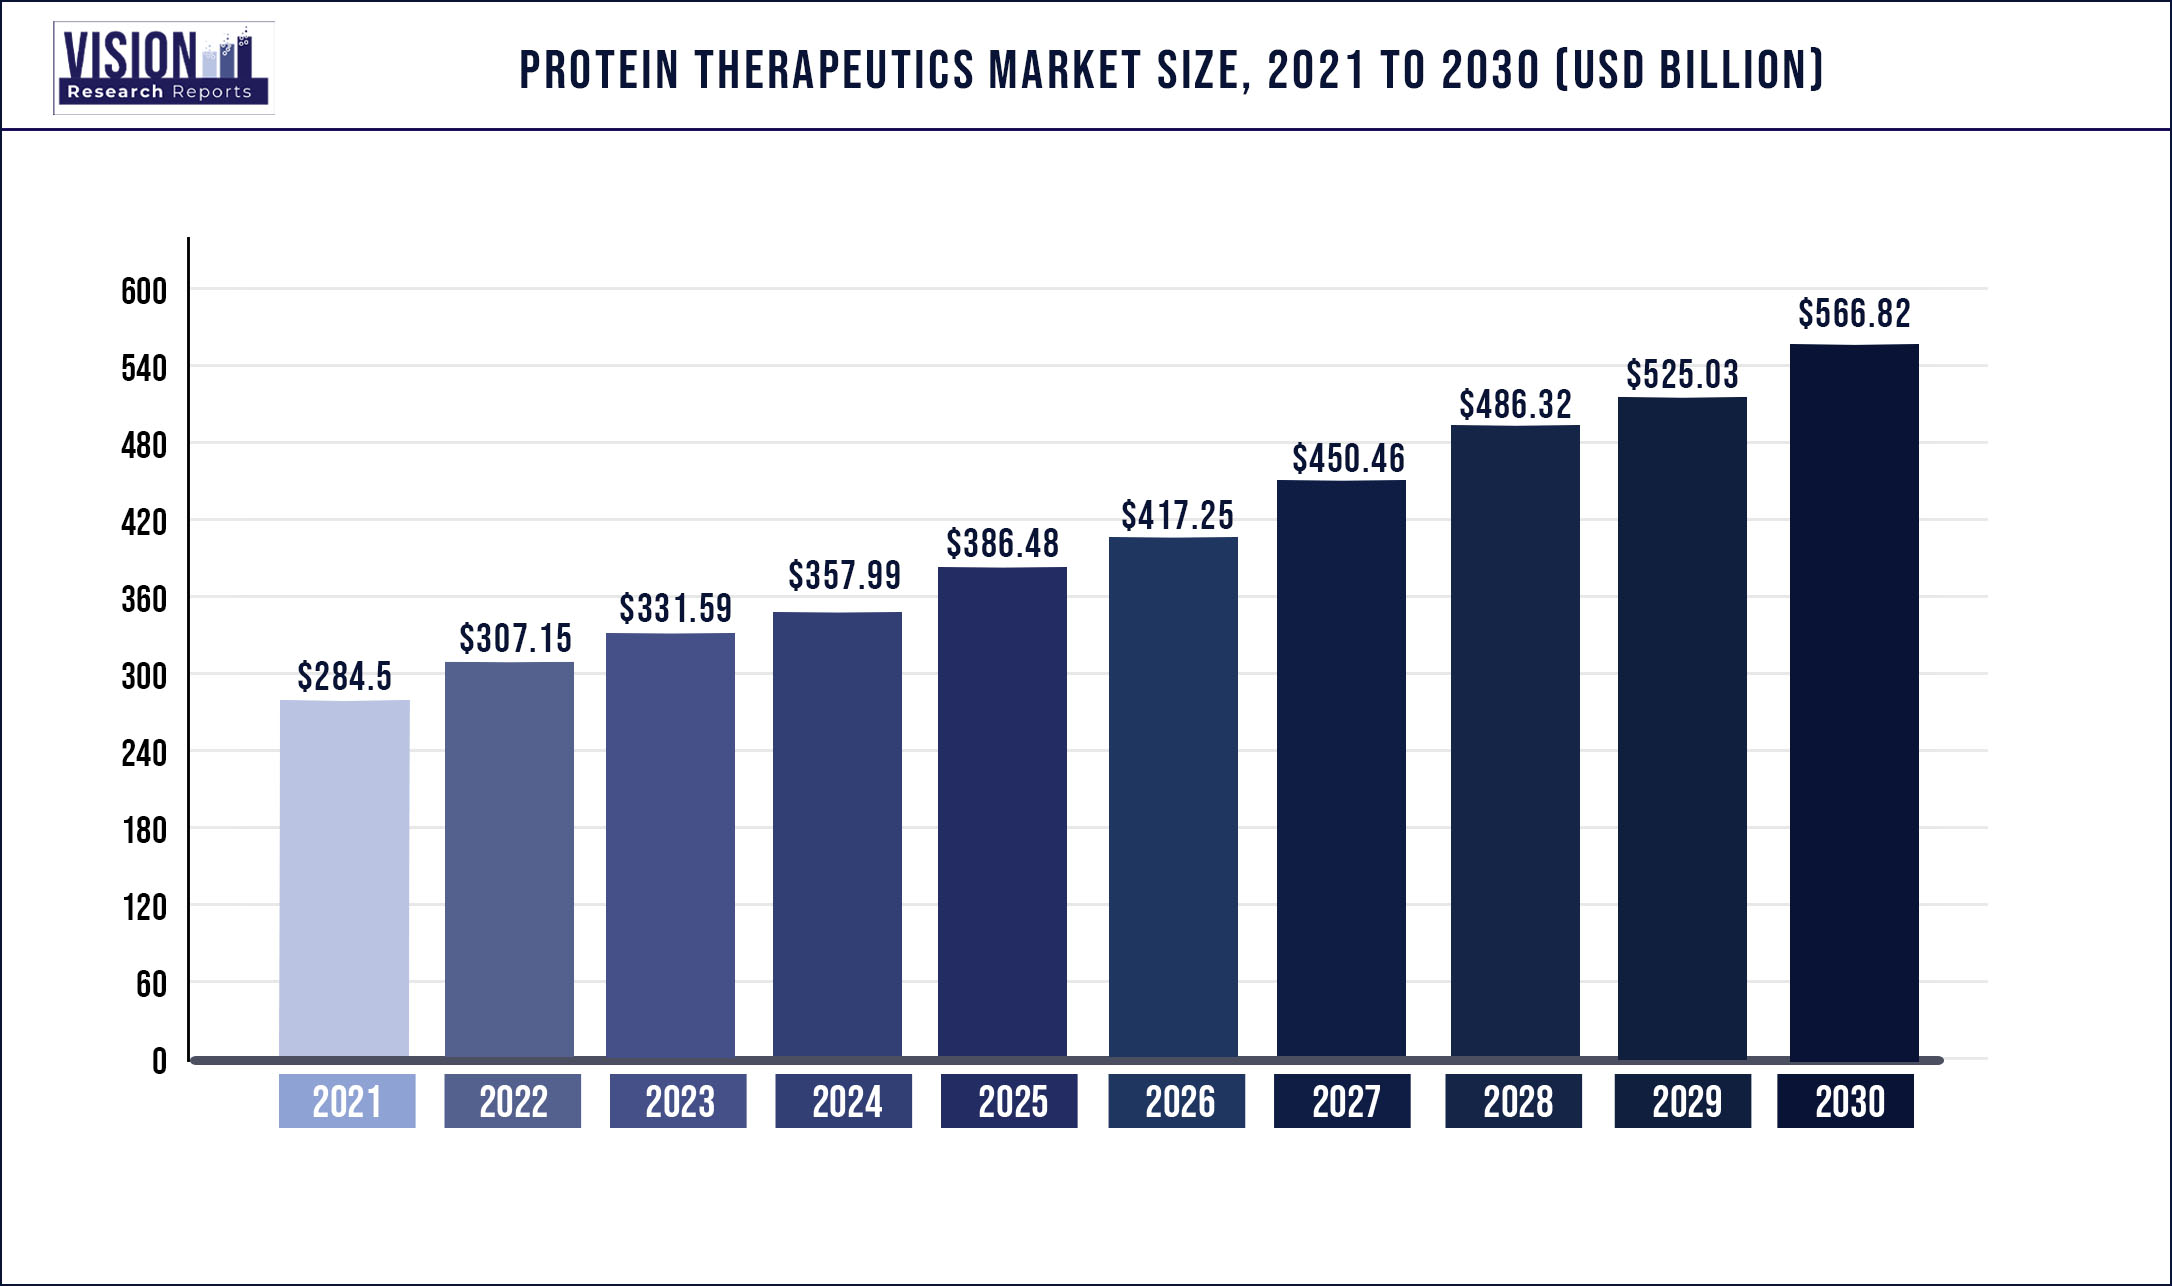 Protein Therapeutics Market Size 2021 to 2030